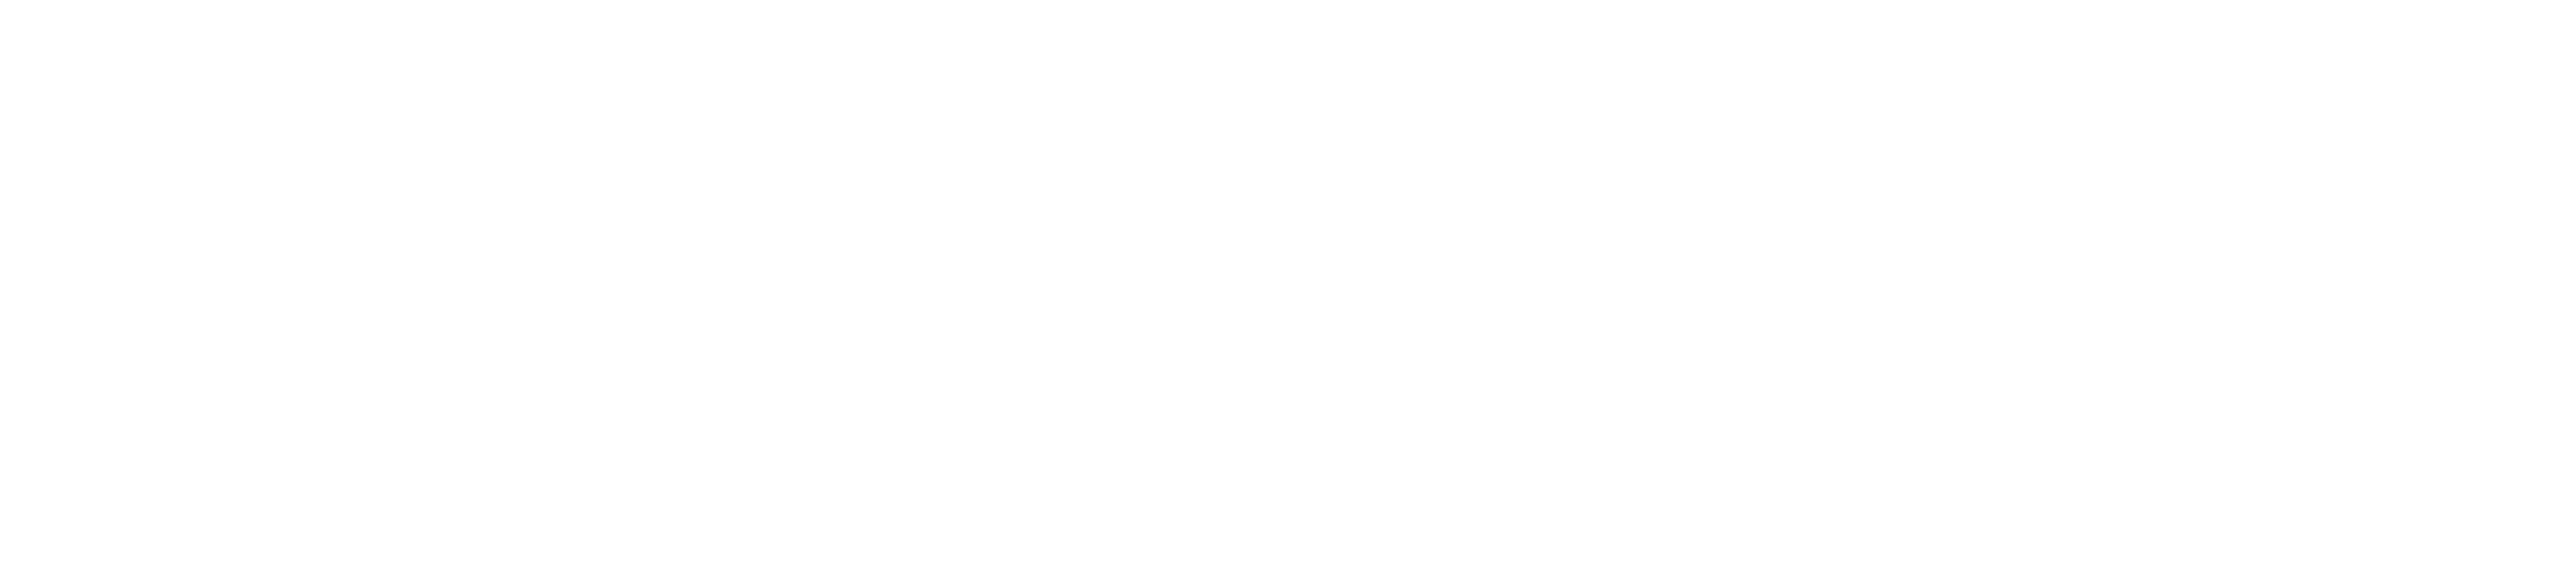 Jeff "Siege" Siegel